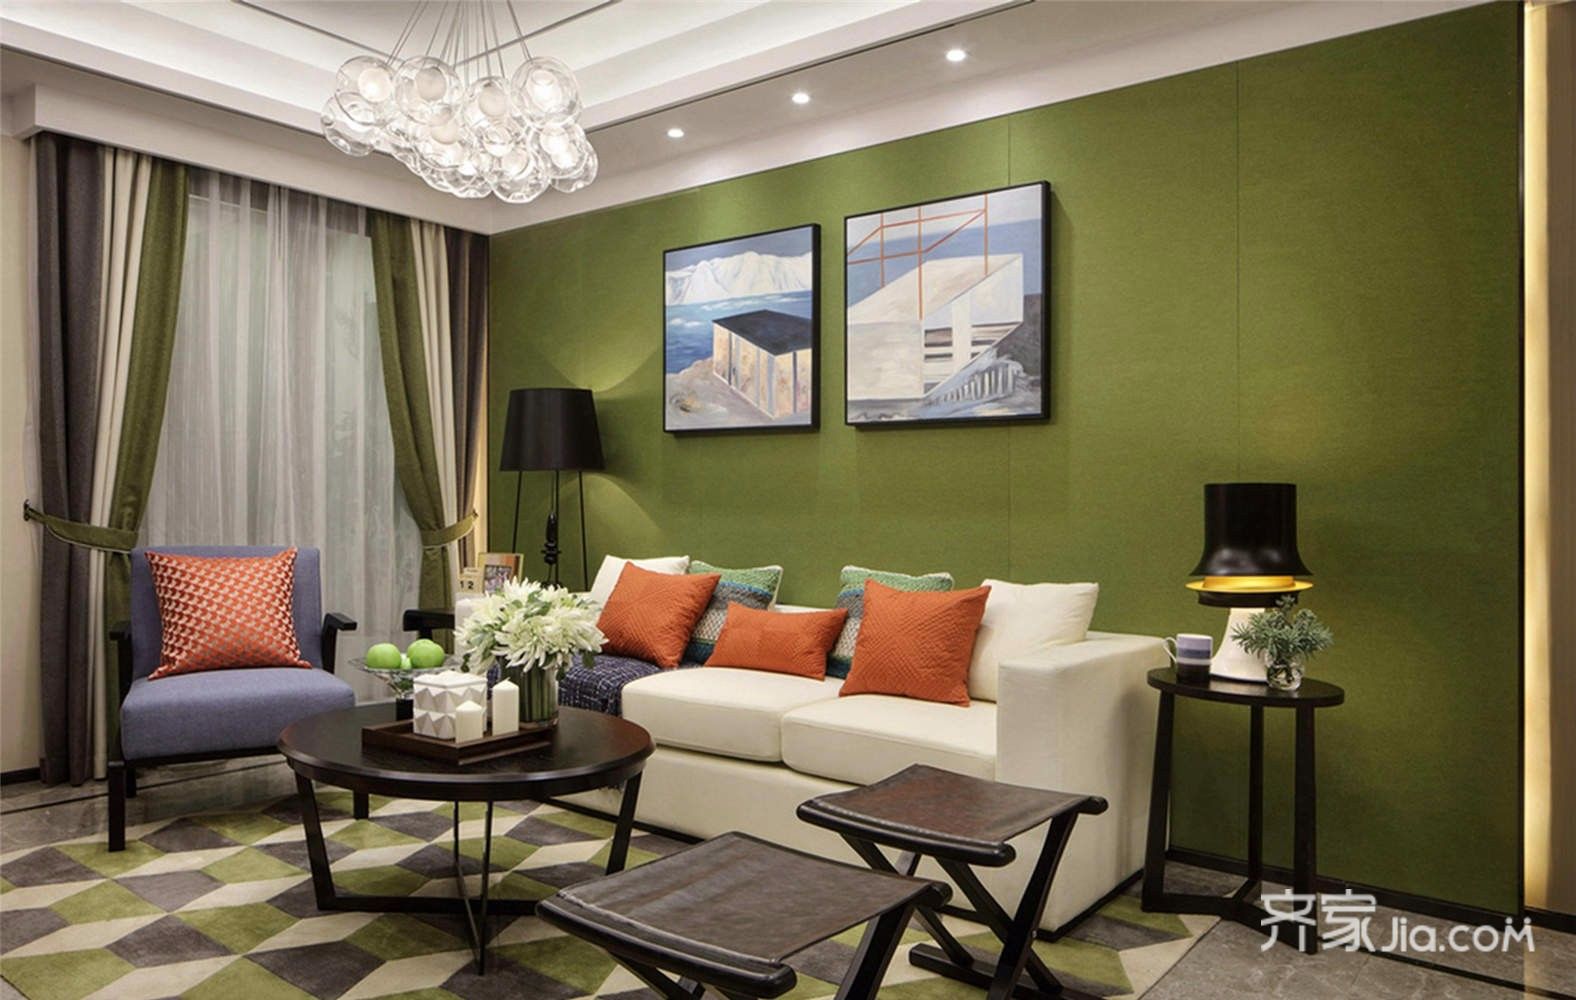 10-15万装修,三居室装修,100平米装修,客厅,现代简约风格,沙发背景墙,绿色